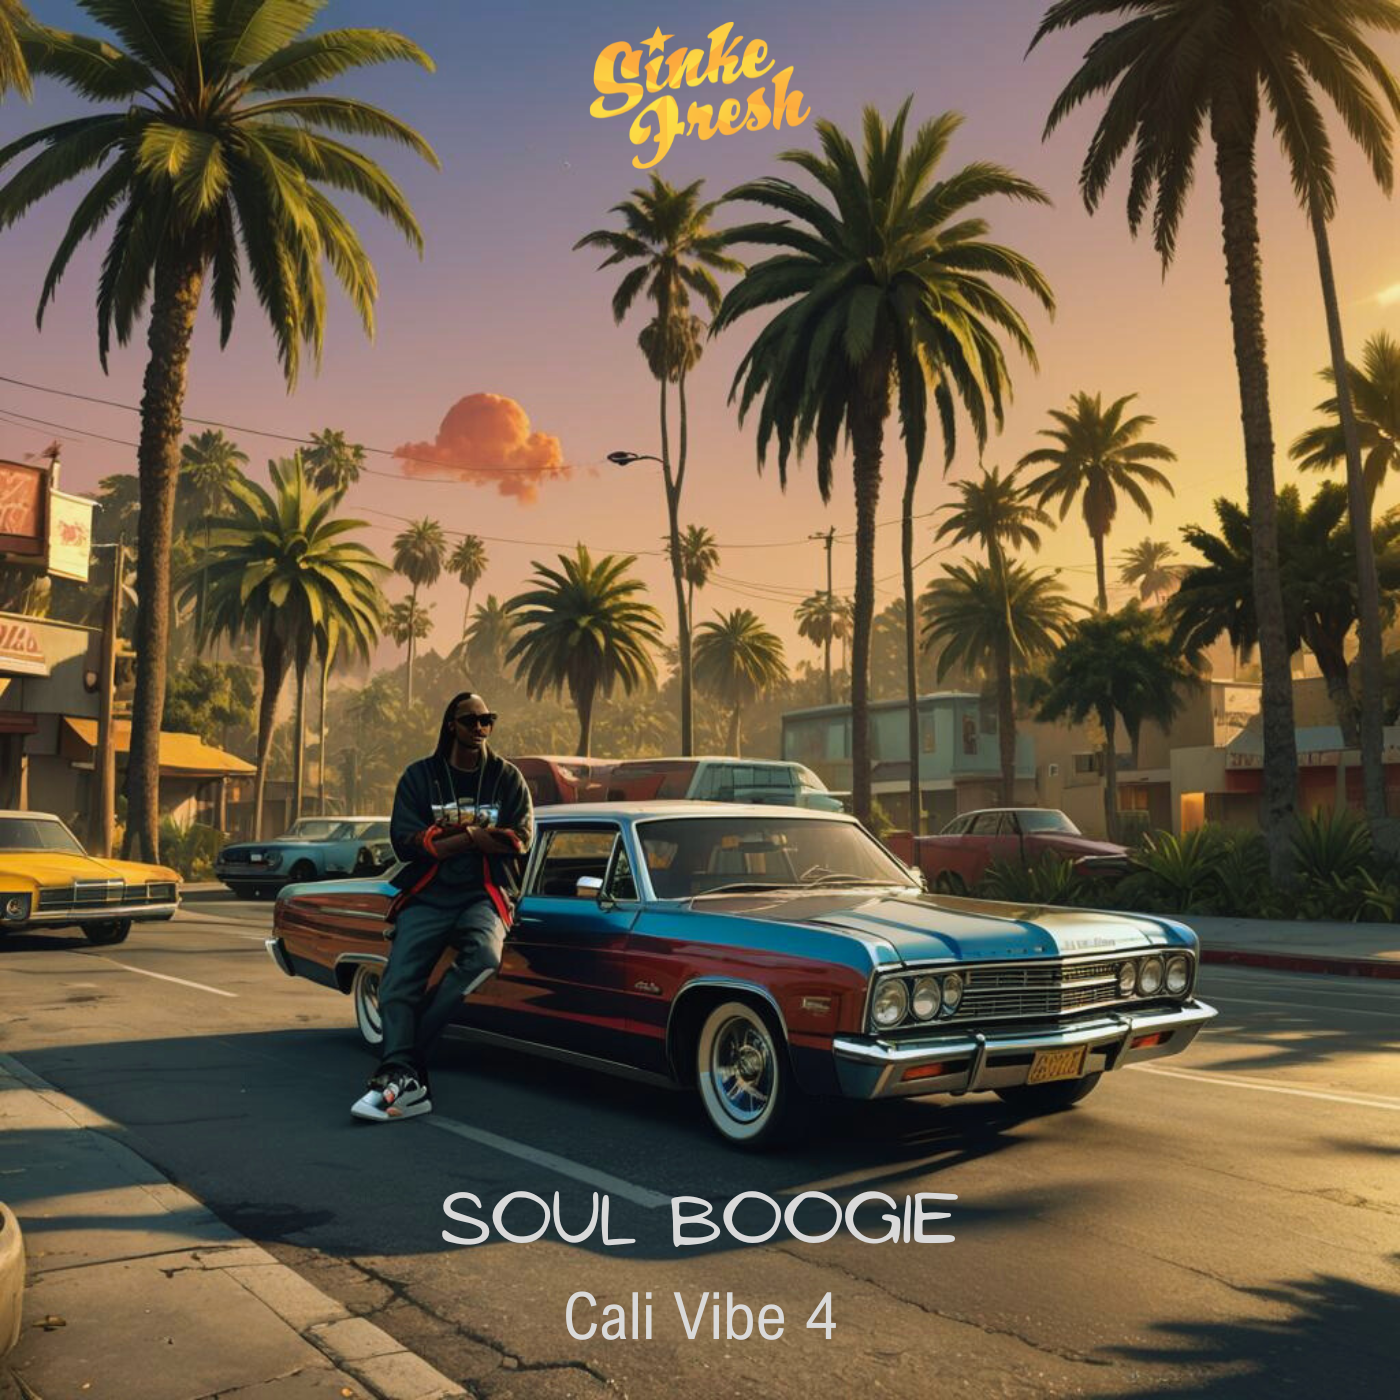 Sinke Fresh – Soul Boogie (Cali Vibe 4)